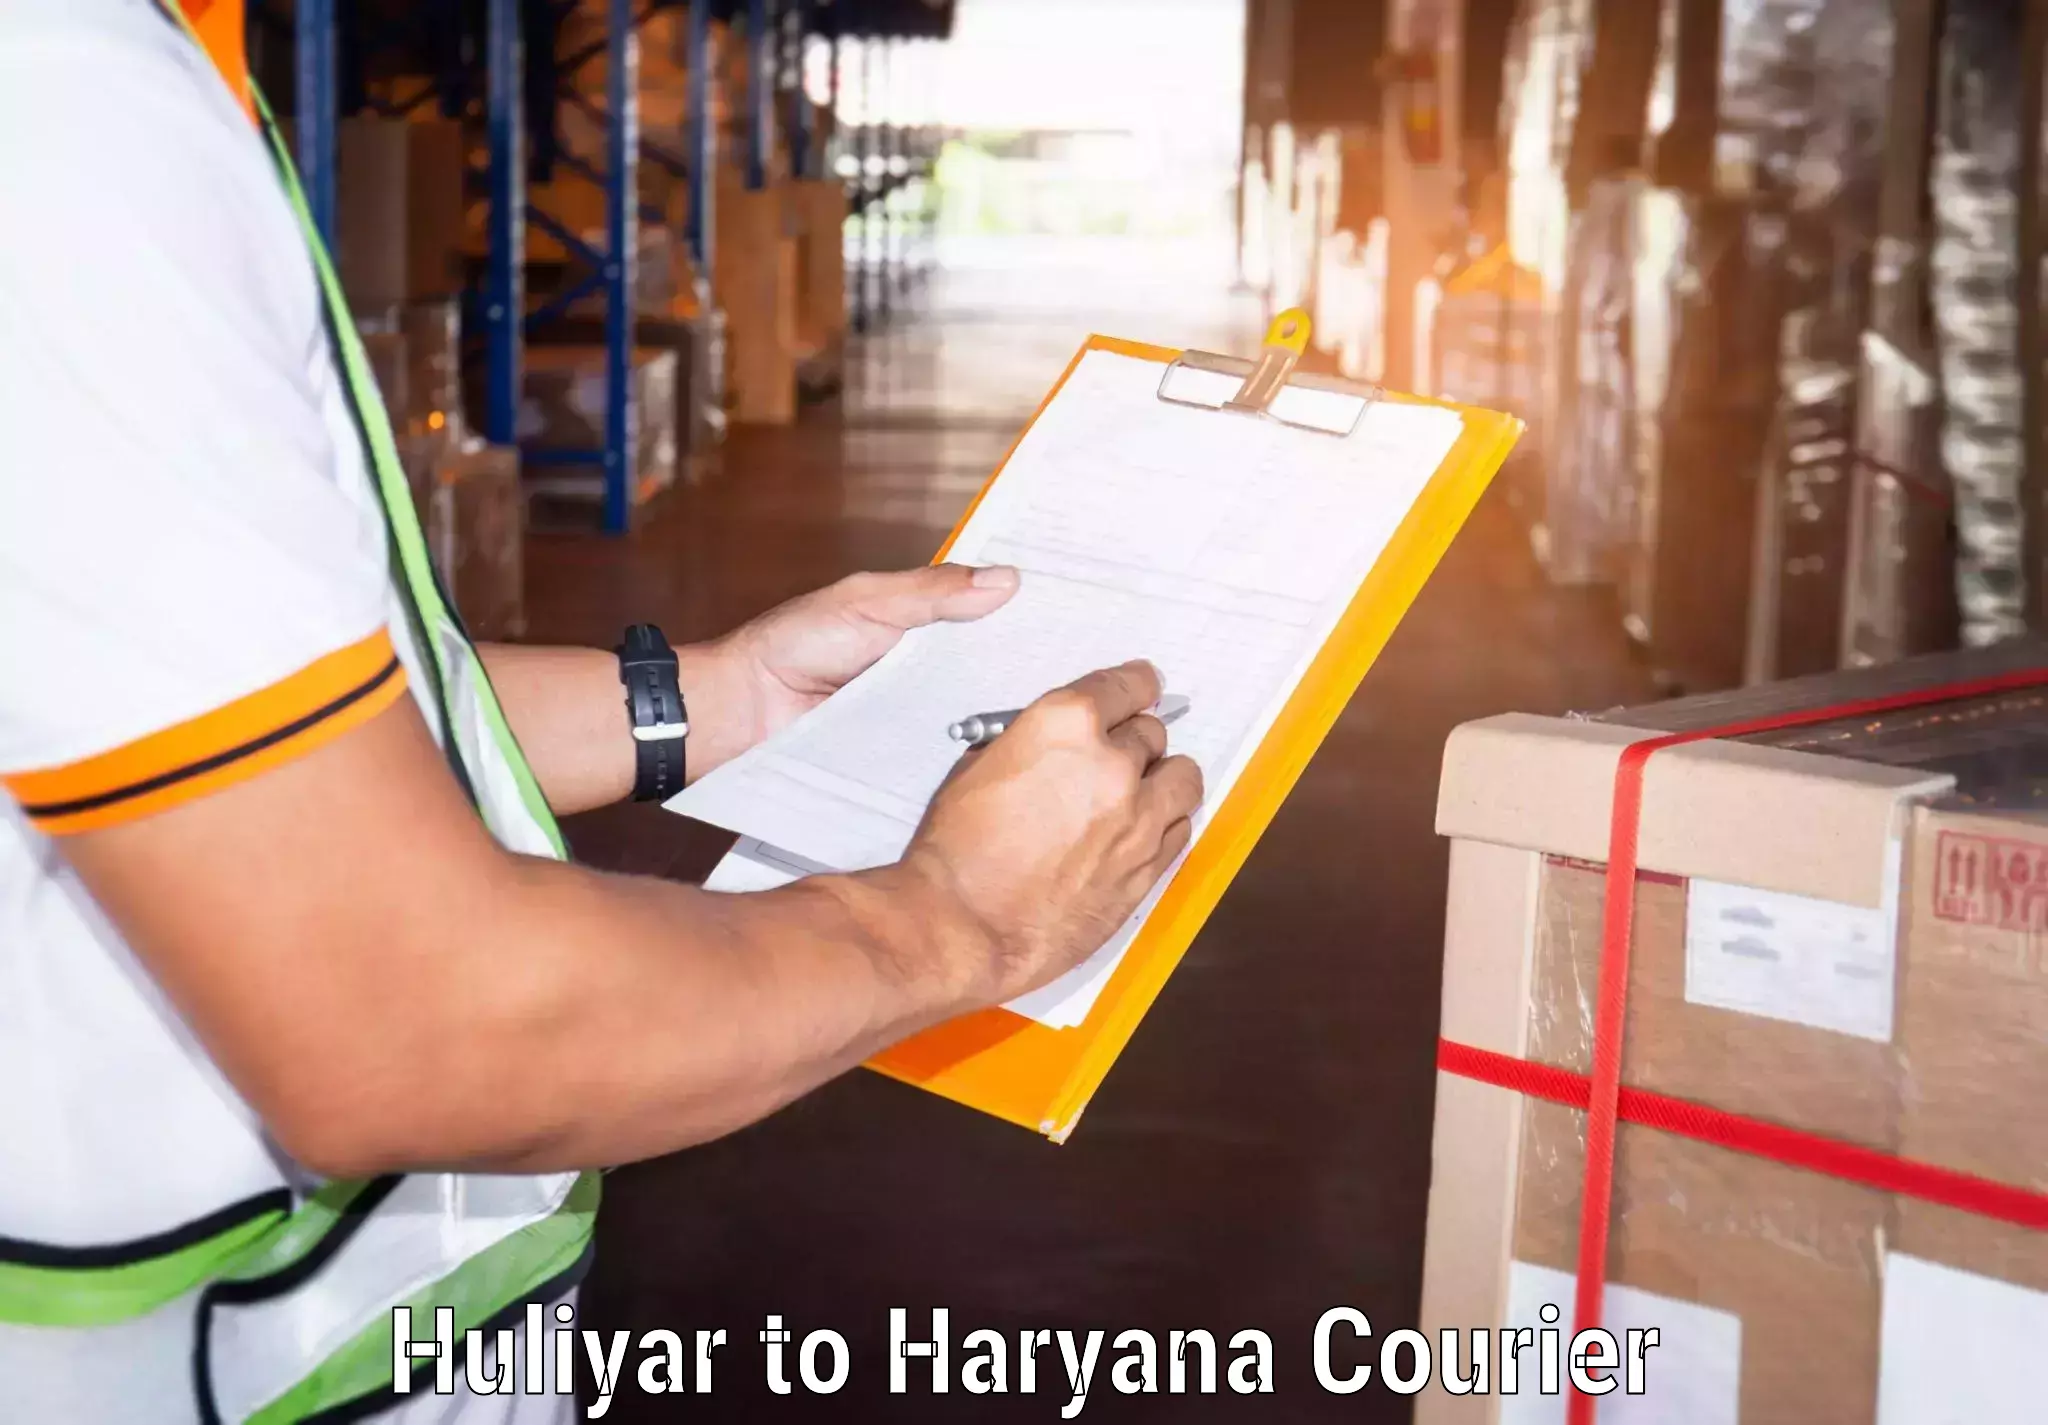 International parcel service Huliyar to Chaudhary Charan Singh Haryana Agricultural University Hisar